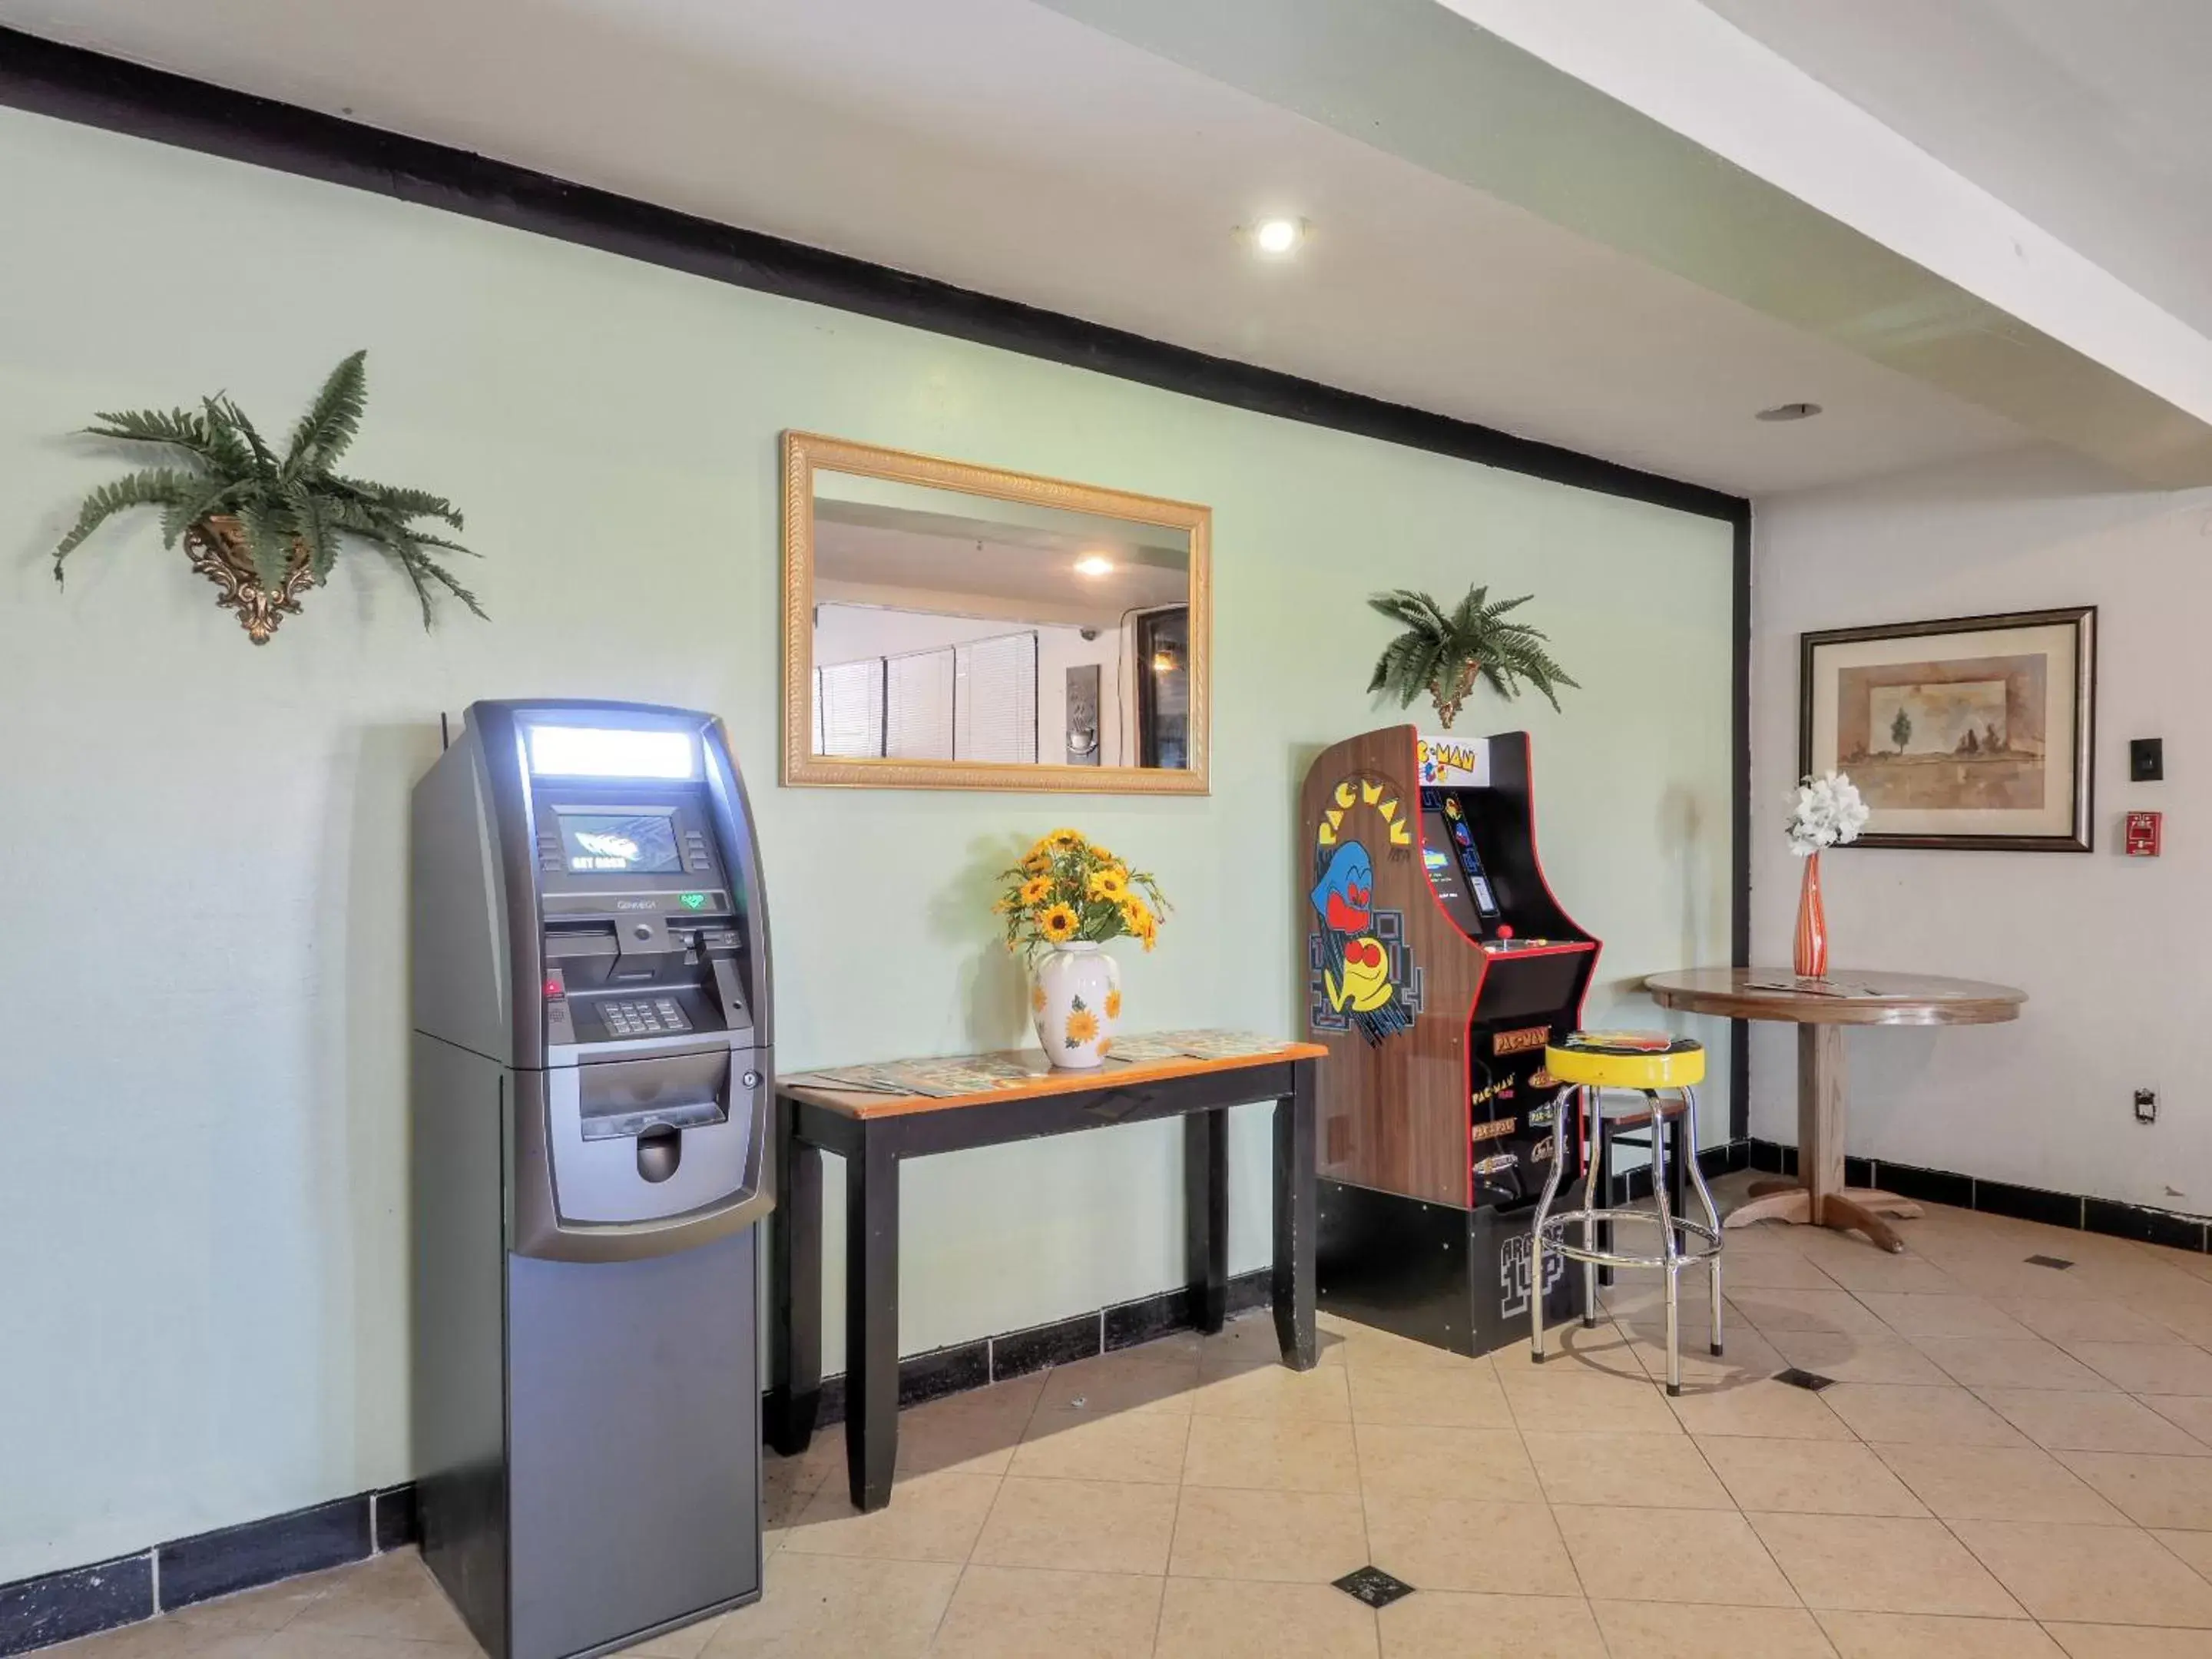 ATM in Lonestar Inn & Suites, Erick OK Hwy 40 BY OYO